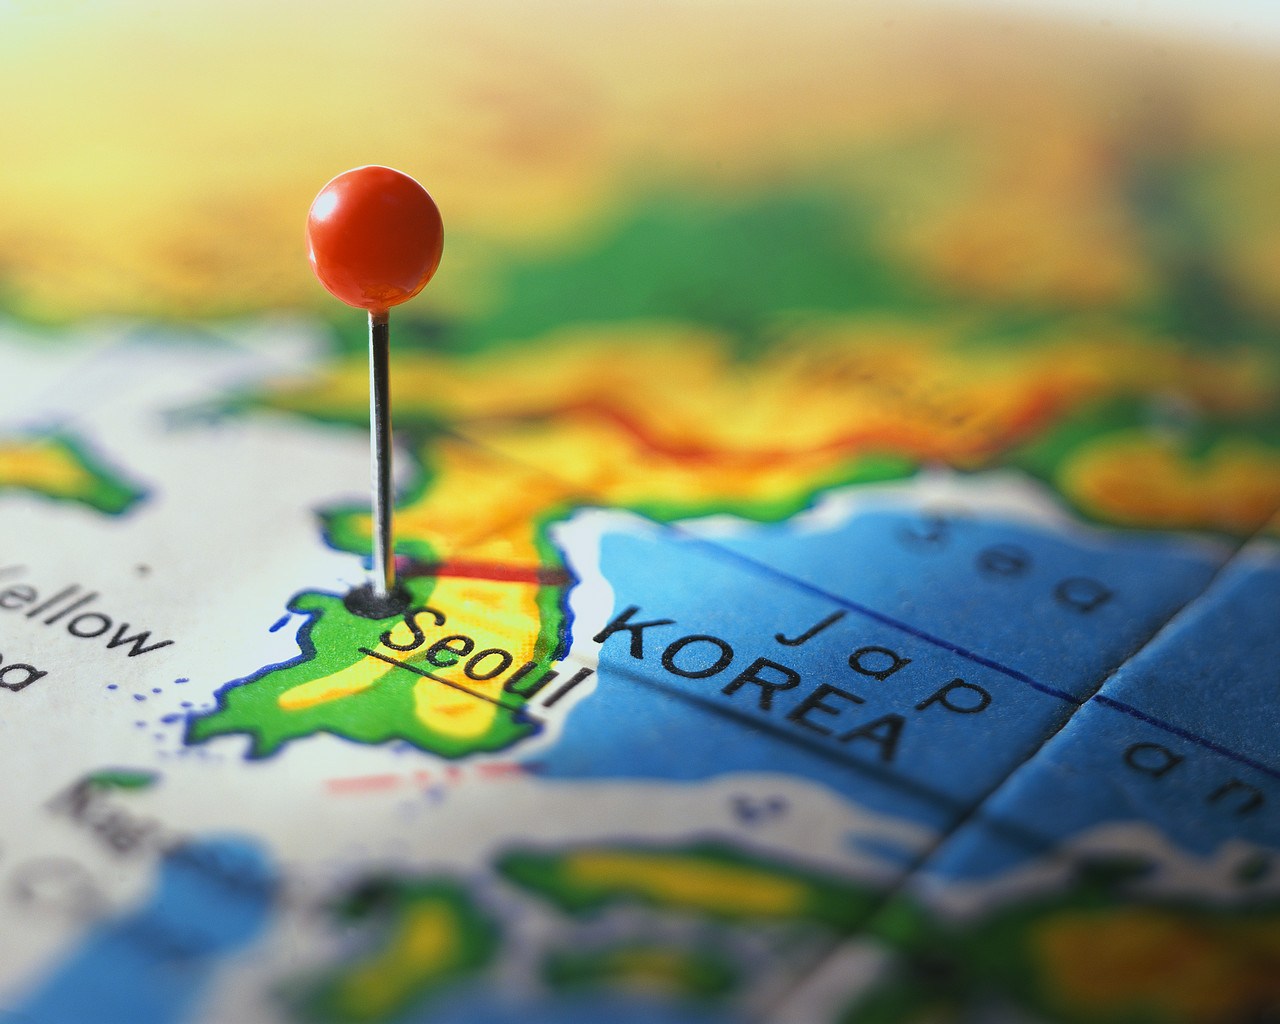 سرور مجازی کره جنوبی سئول برای ترید